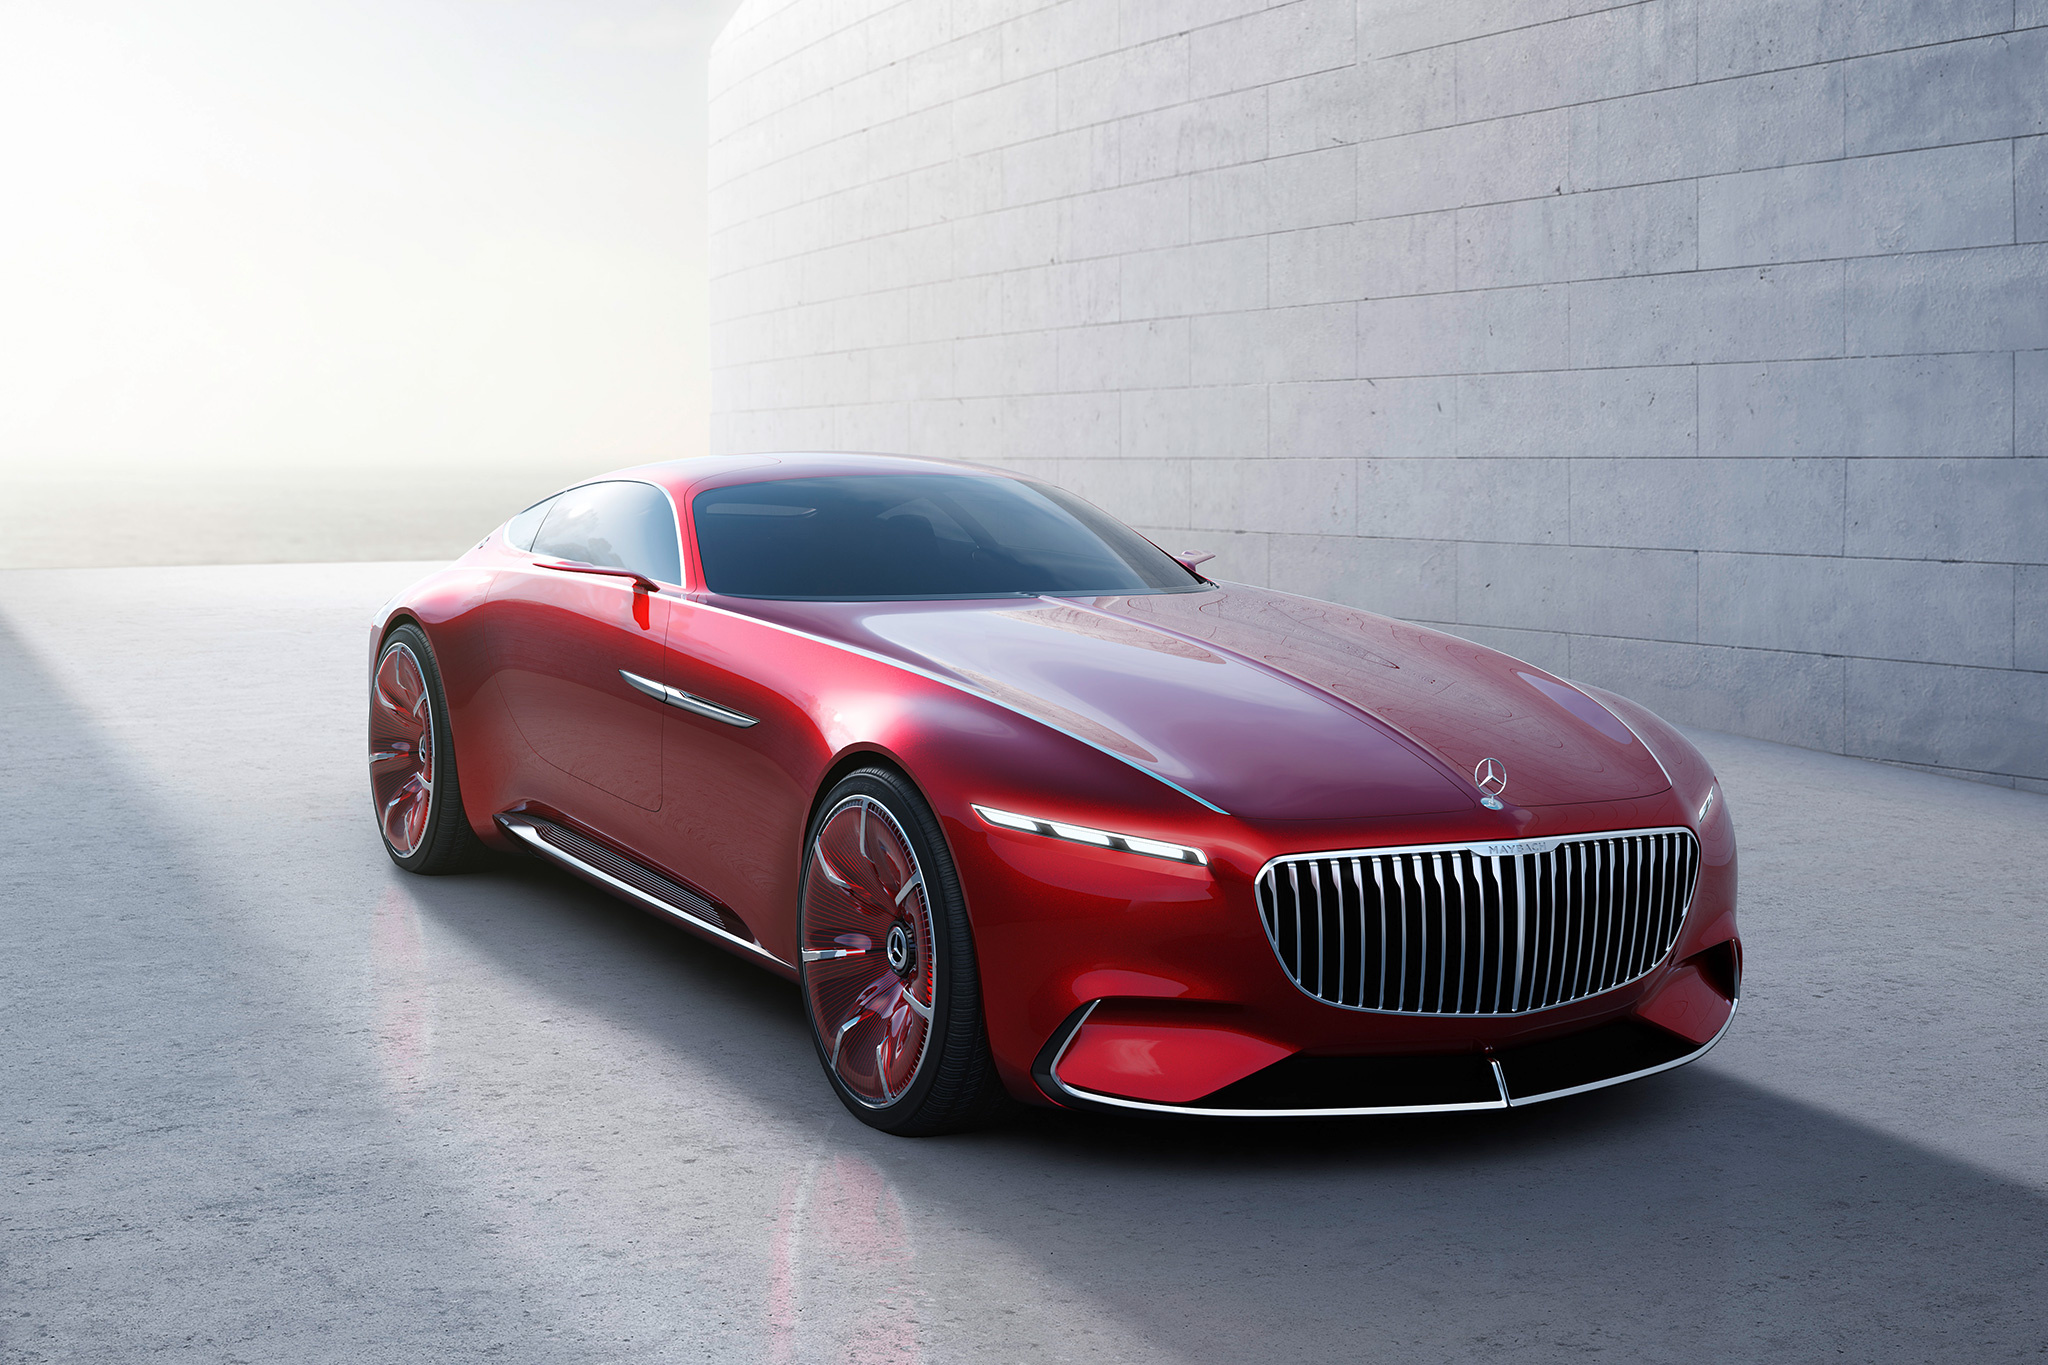 Mercedes-Benz Maybach Exelero, Auto expertise, Maybach vision 6 concept, Laptop HD, 2050x1370 HD Desktop